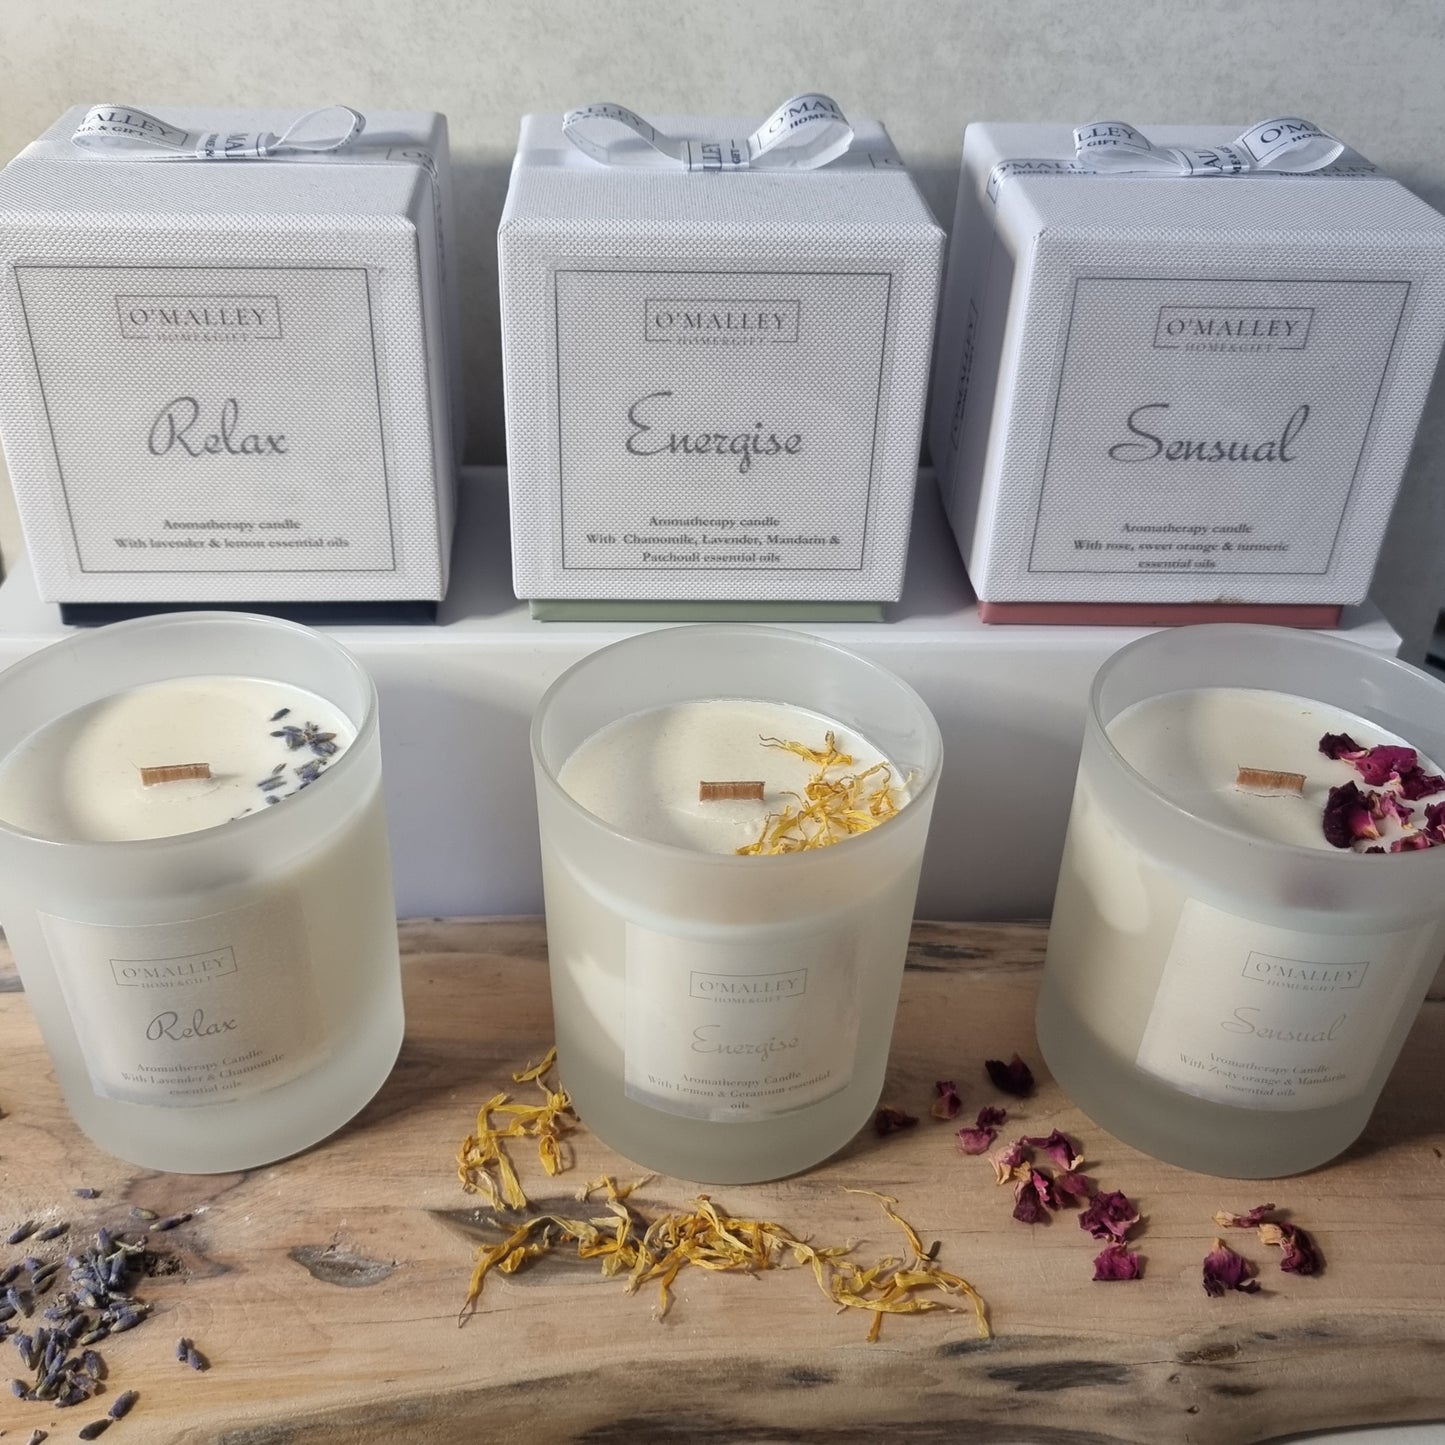 Energise aromatherapy candle